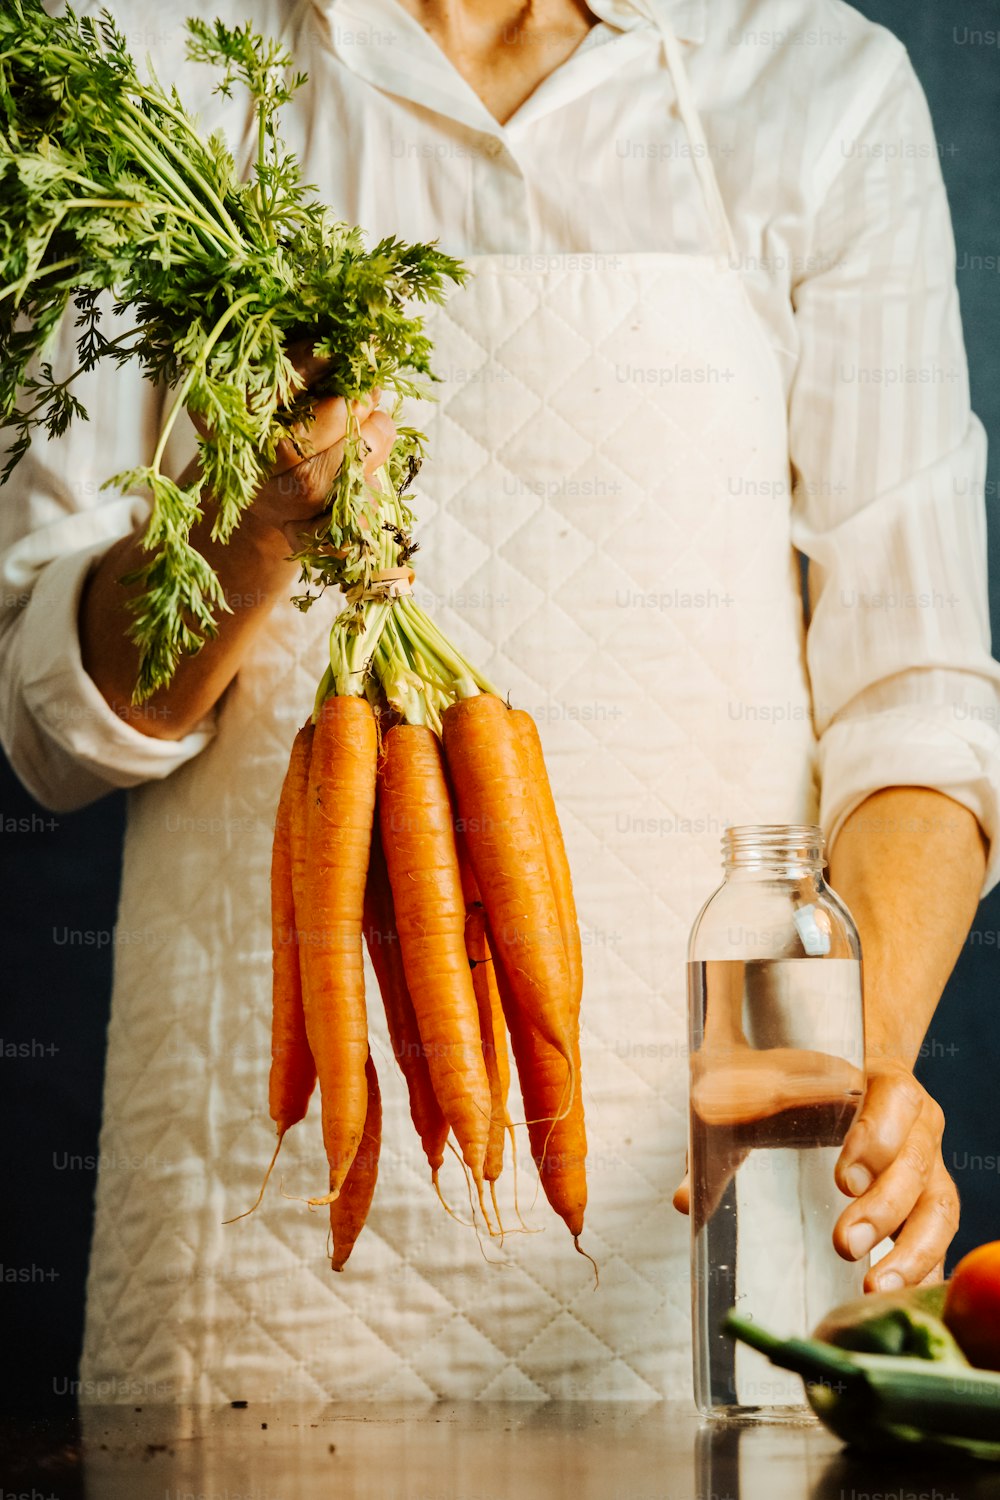 uma pessoa segurando um monte de cenouras nas mãos